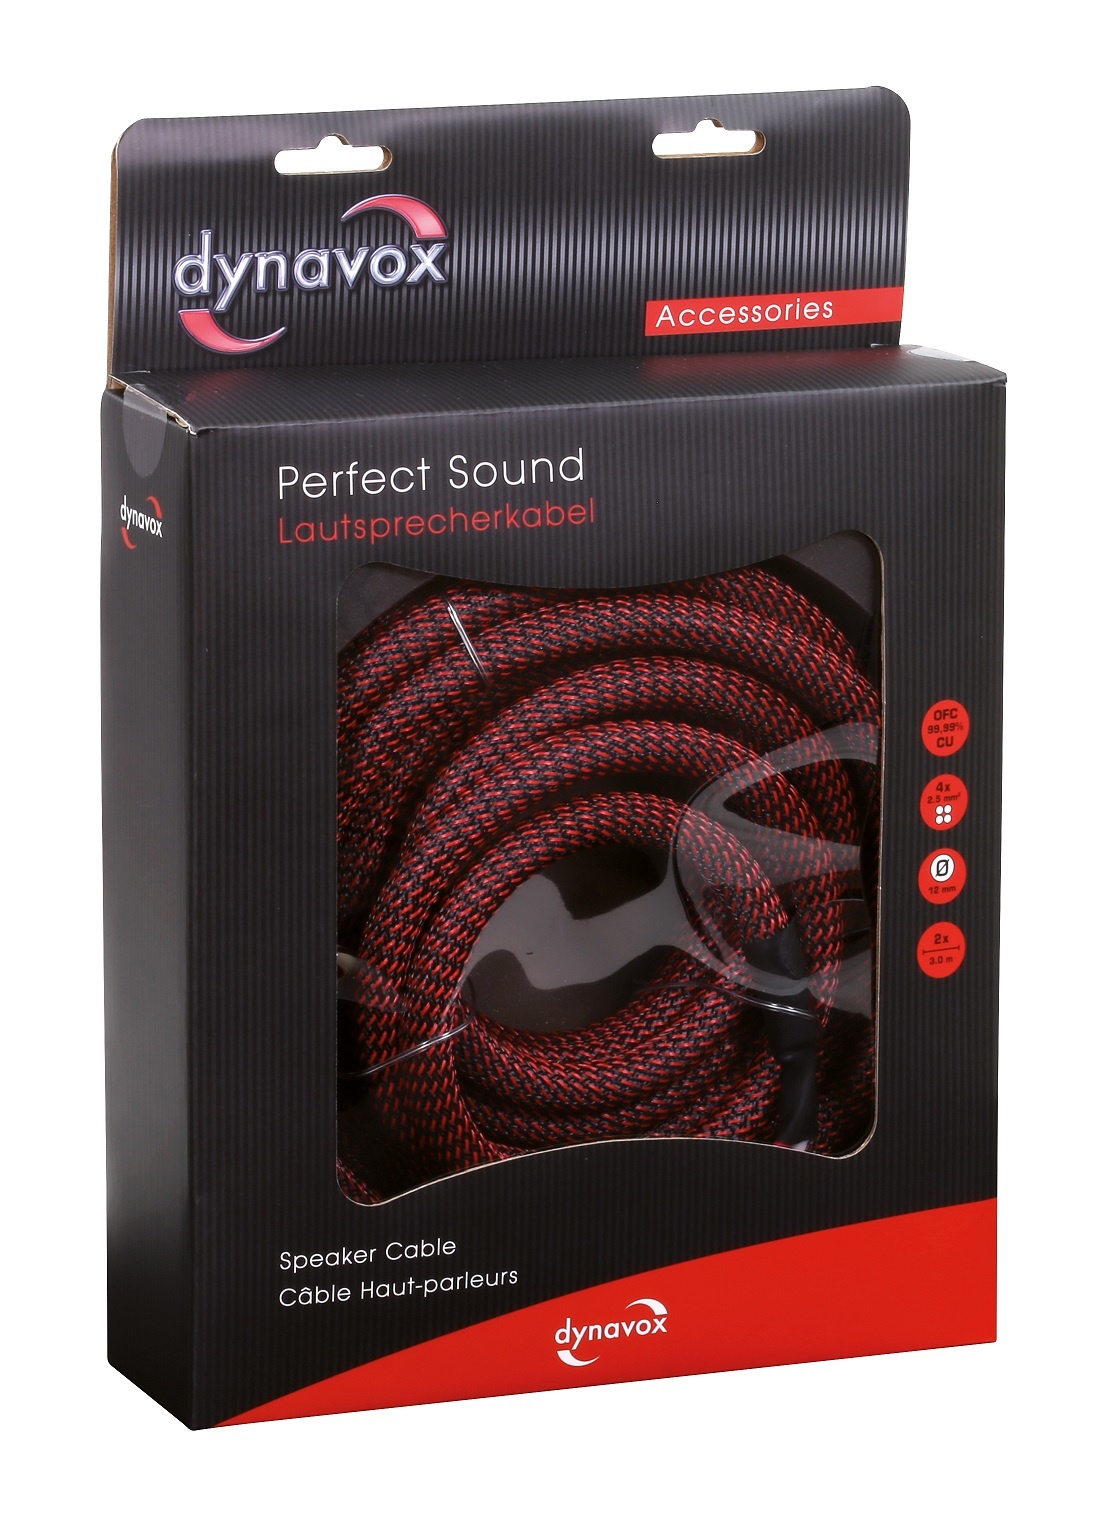 Dynavox High End kabel twisted 3 meter 2 stuks - Maxtotaal